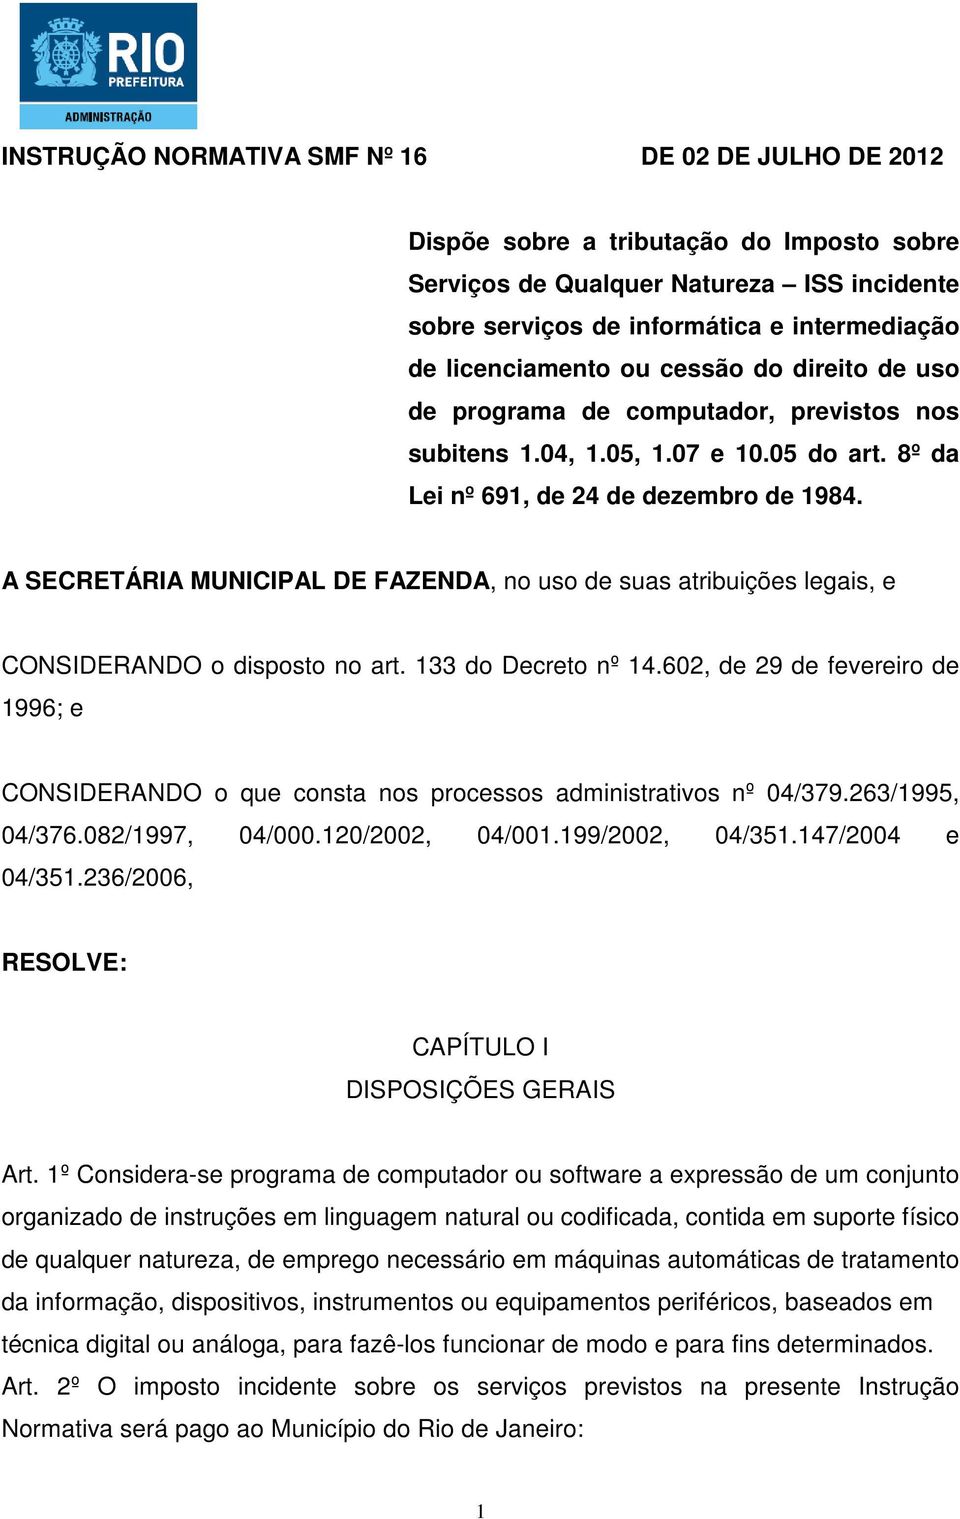 A SECRETÁRIA MUNICIPAL DE FAZENDA, no uso de suas atribuições legais, e CONSIDERANDO o disposto no art. 133 do Decreto nº 14.